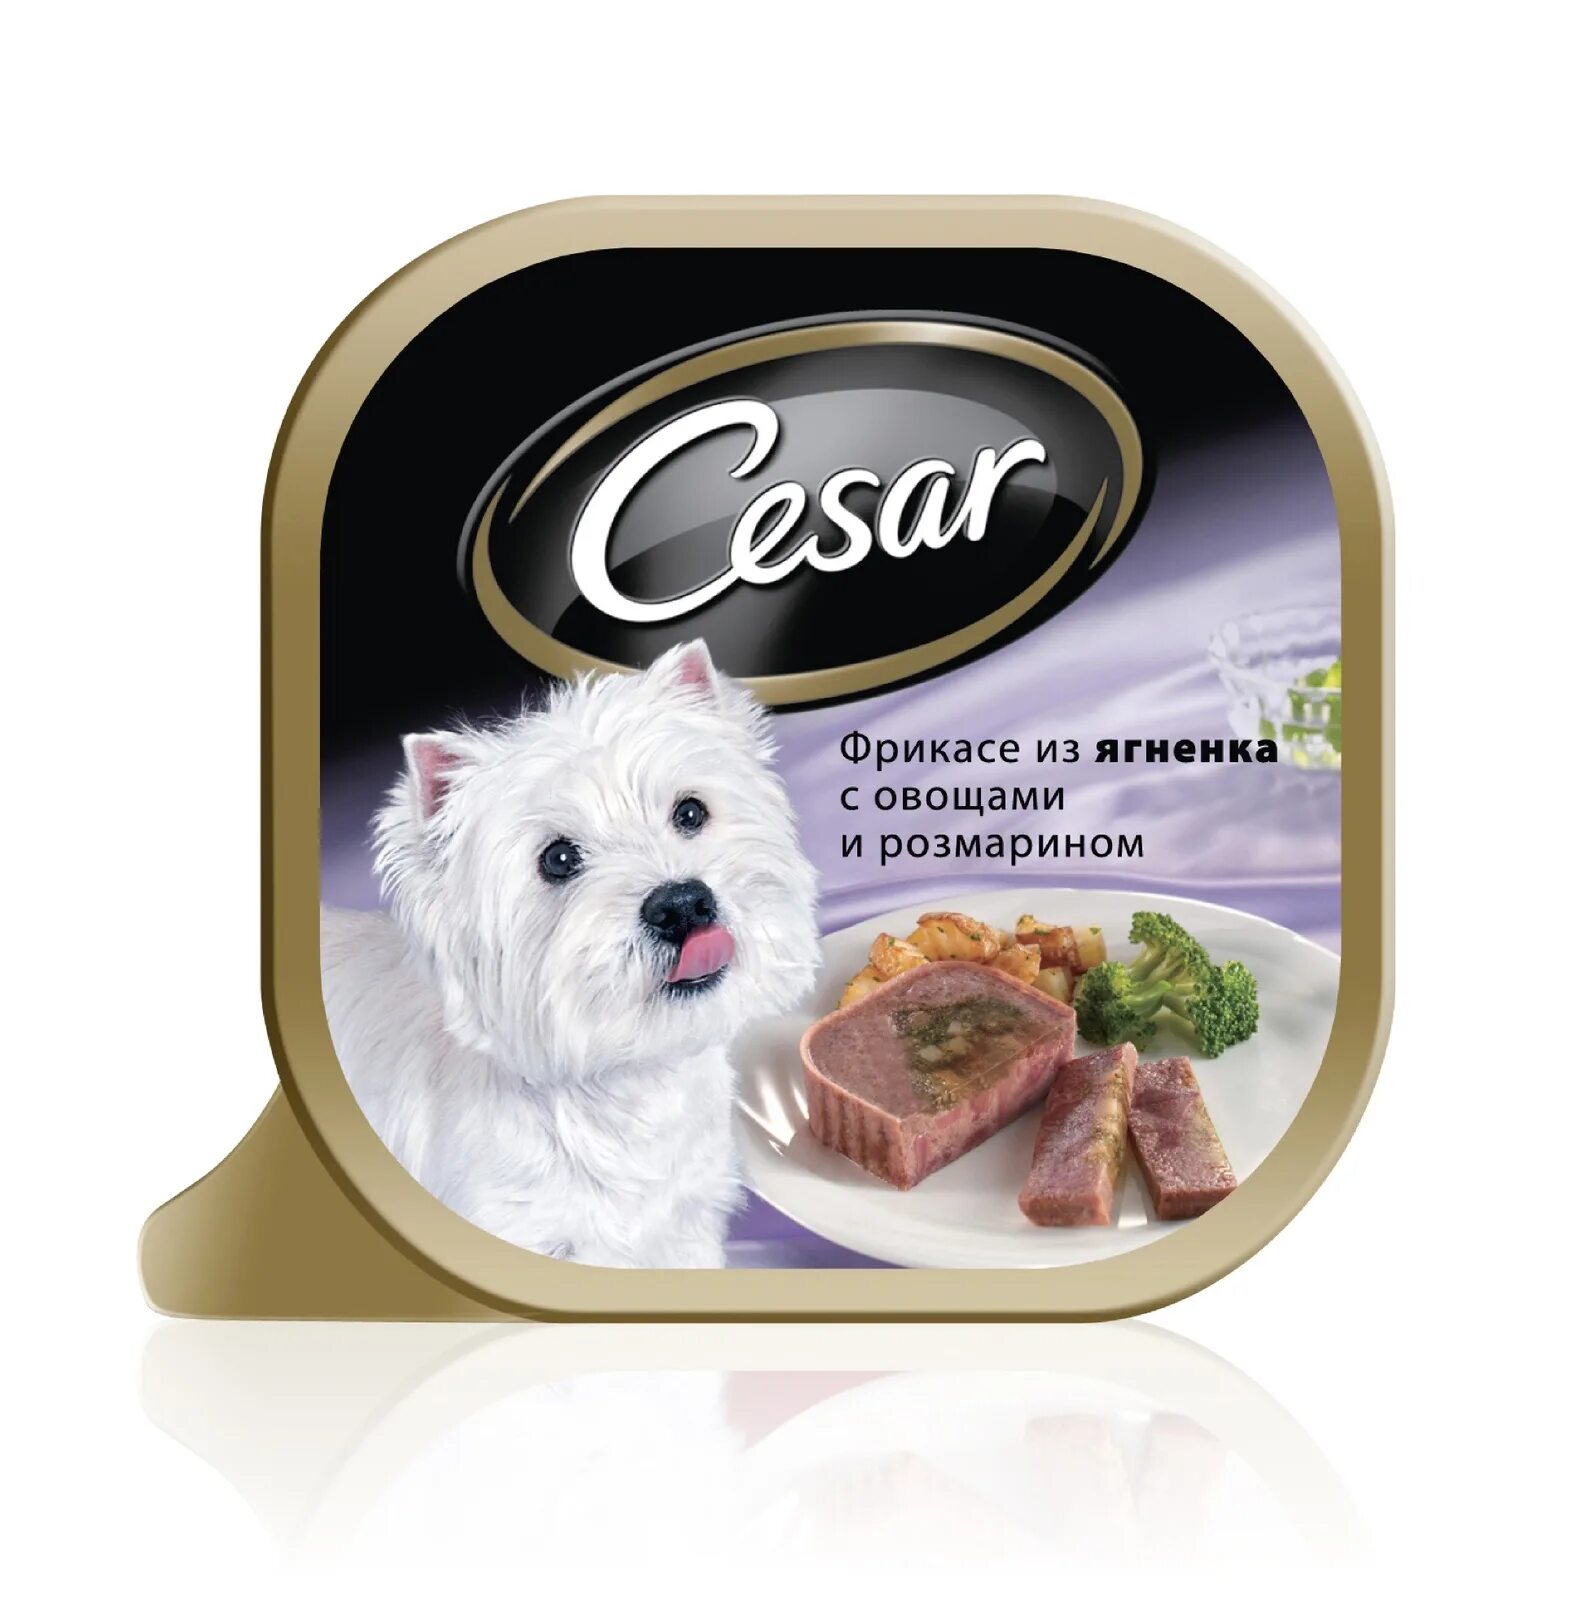 Влажный корм для собак Cesar из говядины с овощами 100г. Cesar консервы для собак. Влажный корм для собак Cesar. Корм для собак купить в нижнем